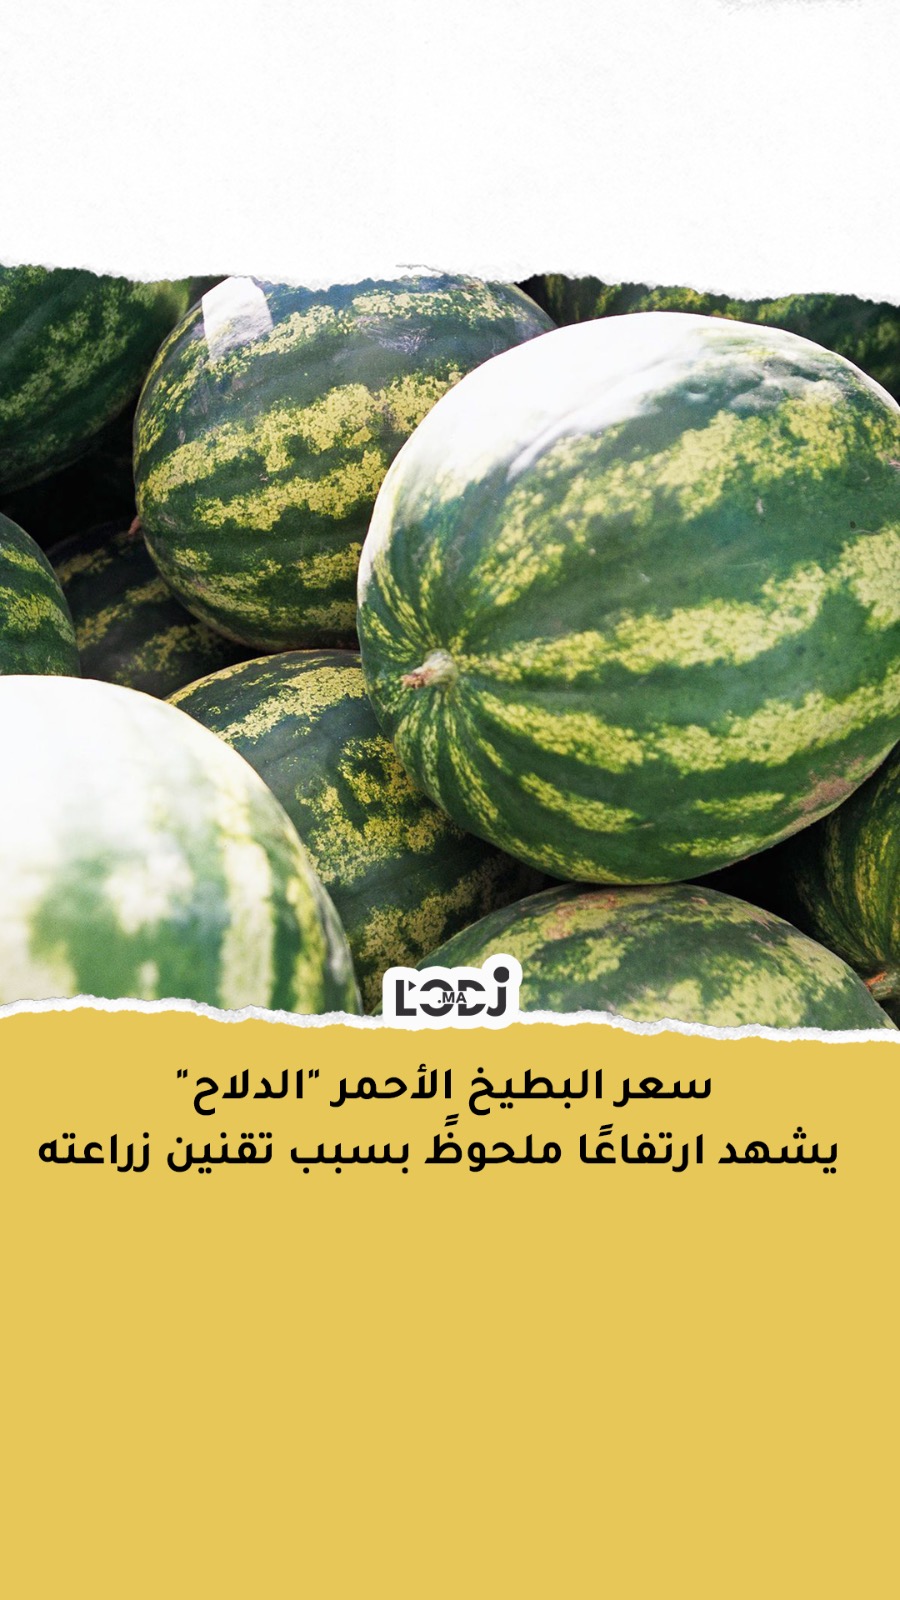 سعر البطيخ الأحمر "الدلاح" يشهد ارتفاعًا ملحوظً بسبب تقنين زراعته